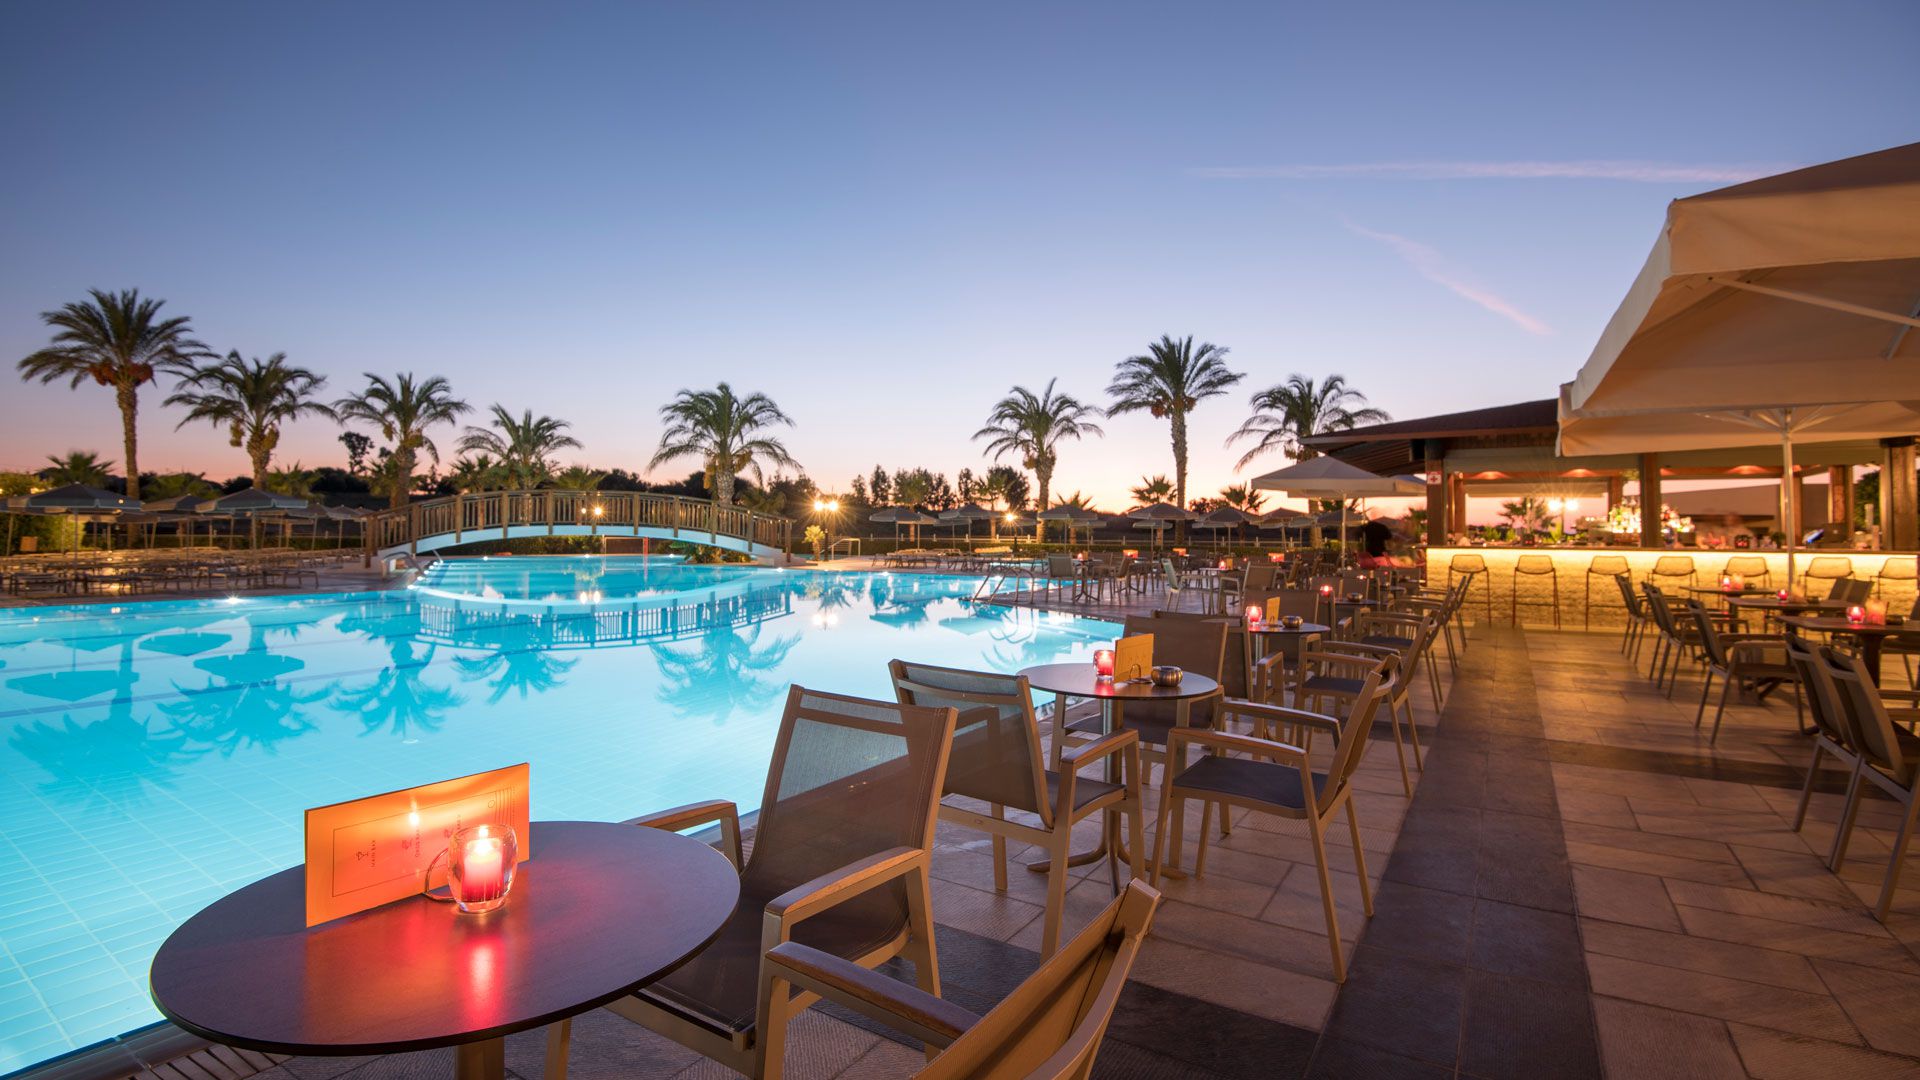 Το Ξενοδοχείο HORIZON BEACH RESORT 4+* στο Μαστιχάρι της Κω, ζητά προσωπικό για τη σεζόν 2023